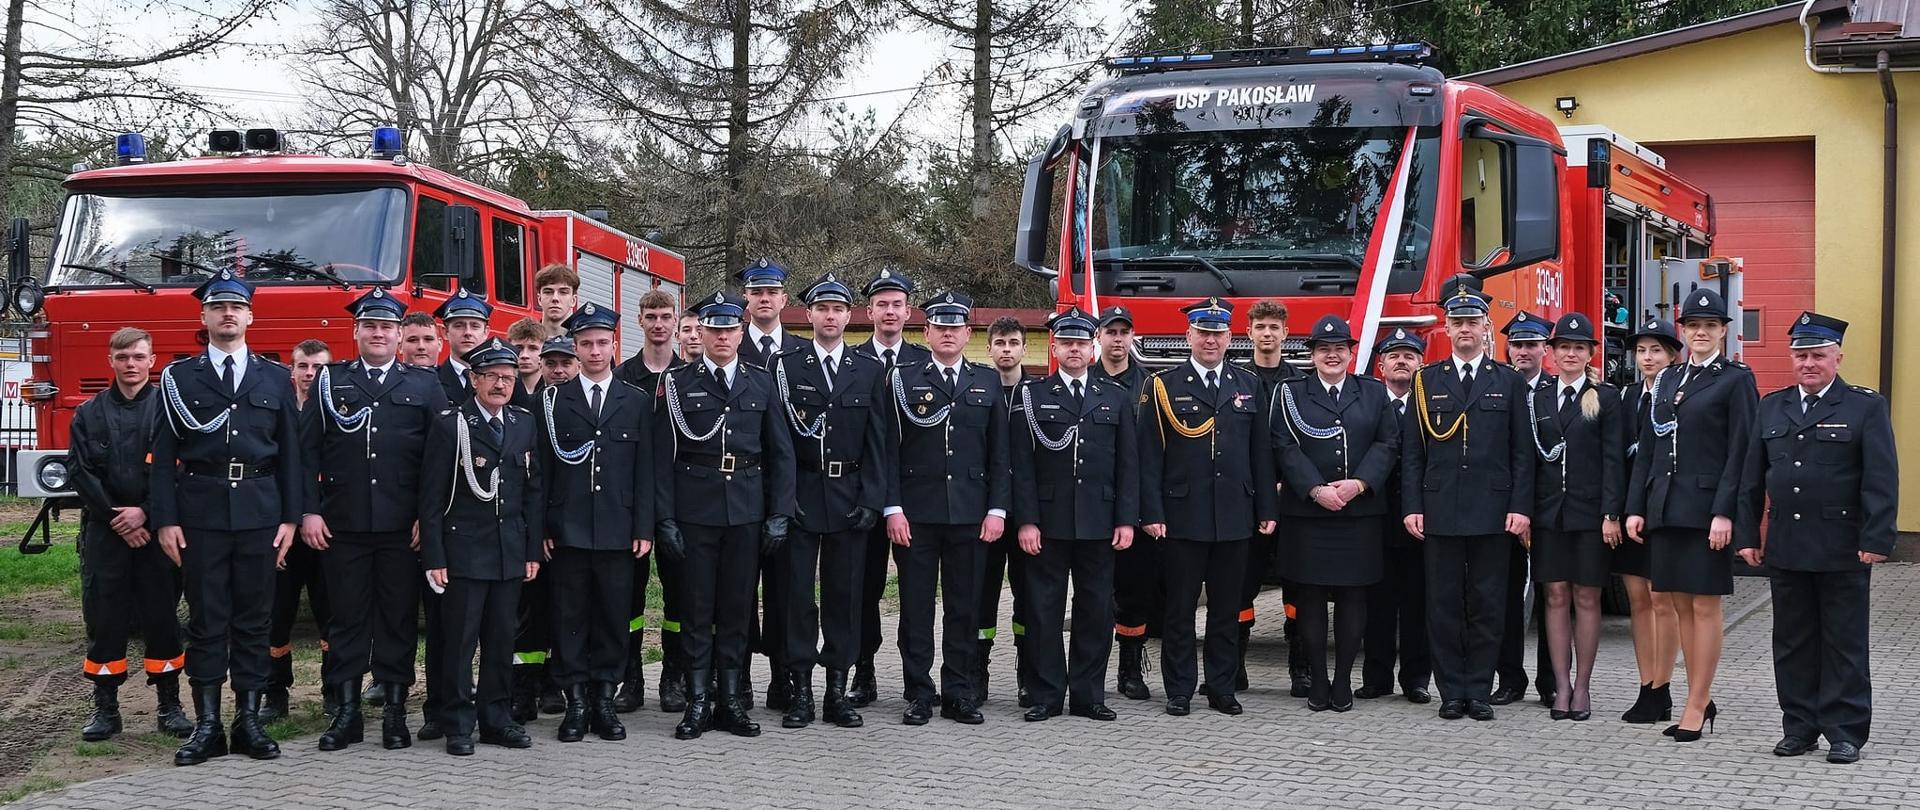 Przekazanie samochodu ratowniczo-gaśniczego dla jednostki Ochotniczej Straży Pożarnej w Pakosławiu (powiat radomski)